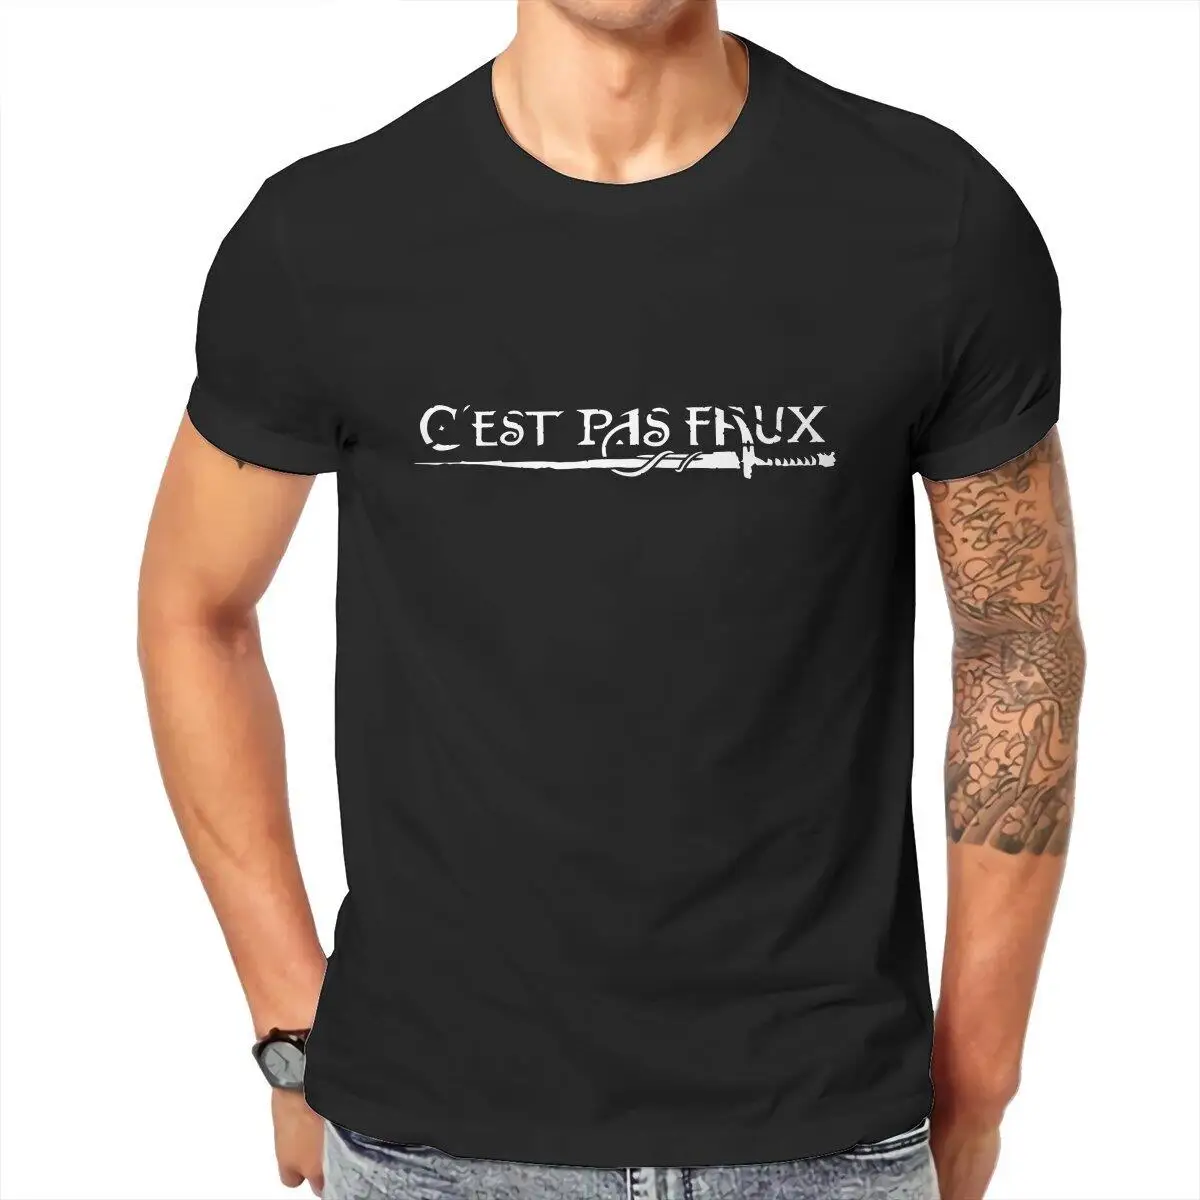 C'est pas faux  T-Shirt for Men Kamelot Leisure Pure Cotton Tee Shirt O Neck Short Sleeve T Shirts Gift Idea Clothing